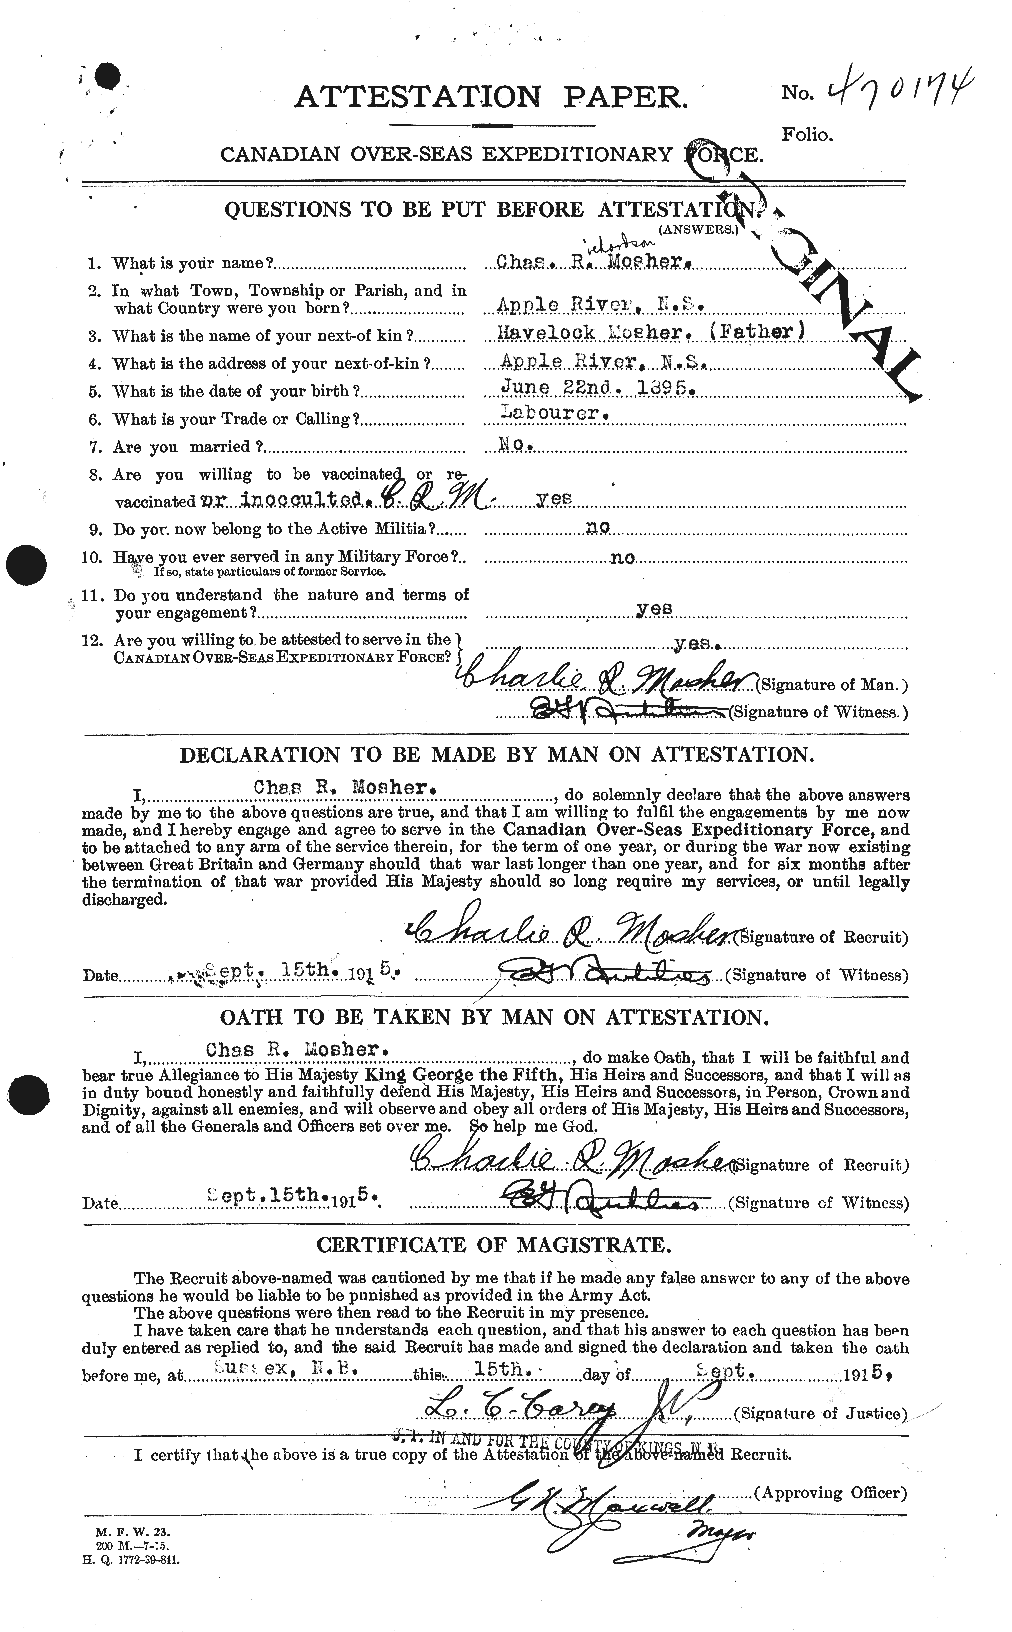 Dossiers du Personnel de la Première Guerre mondiale - CEC 511819a